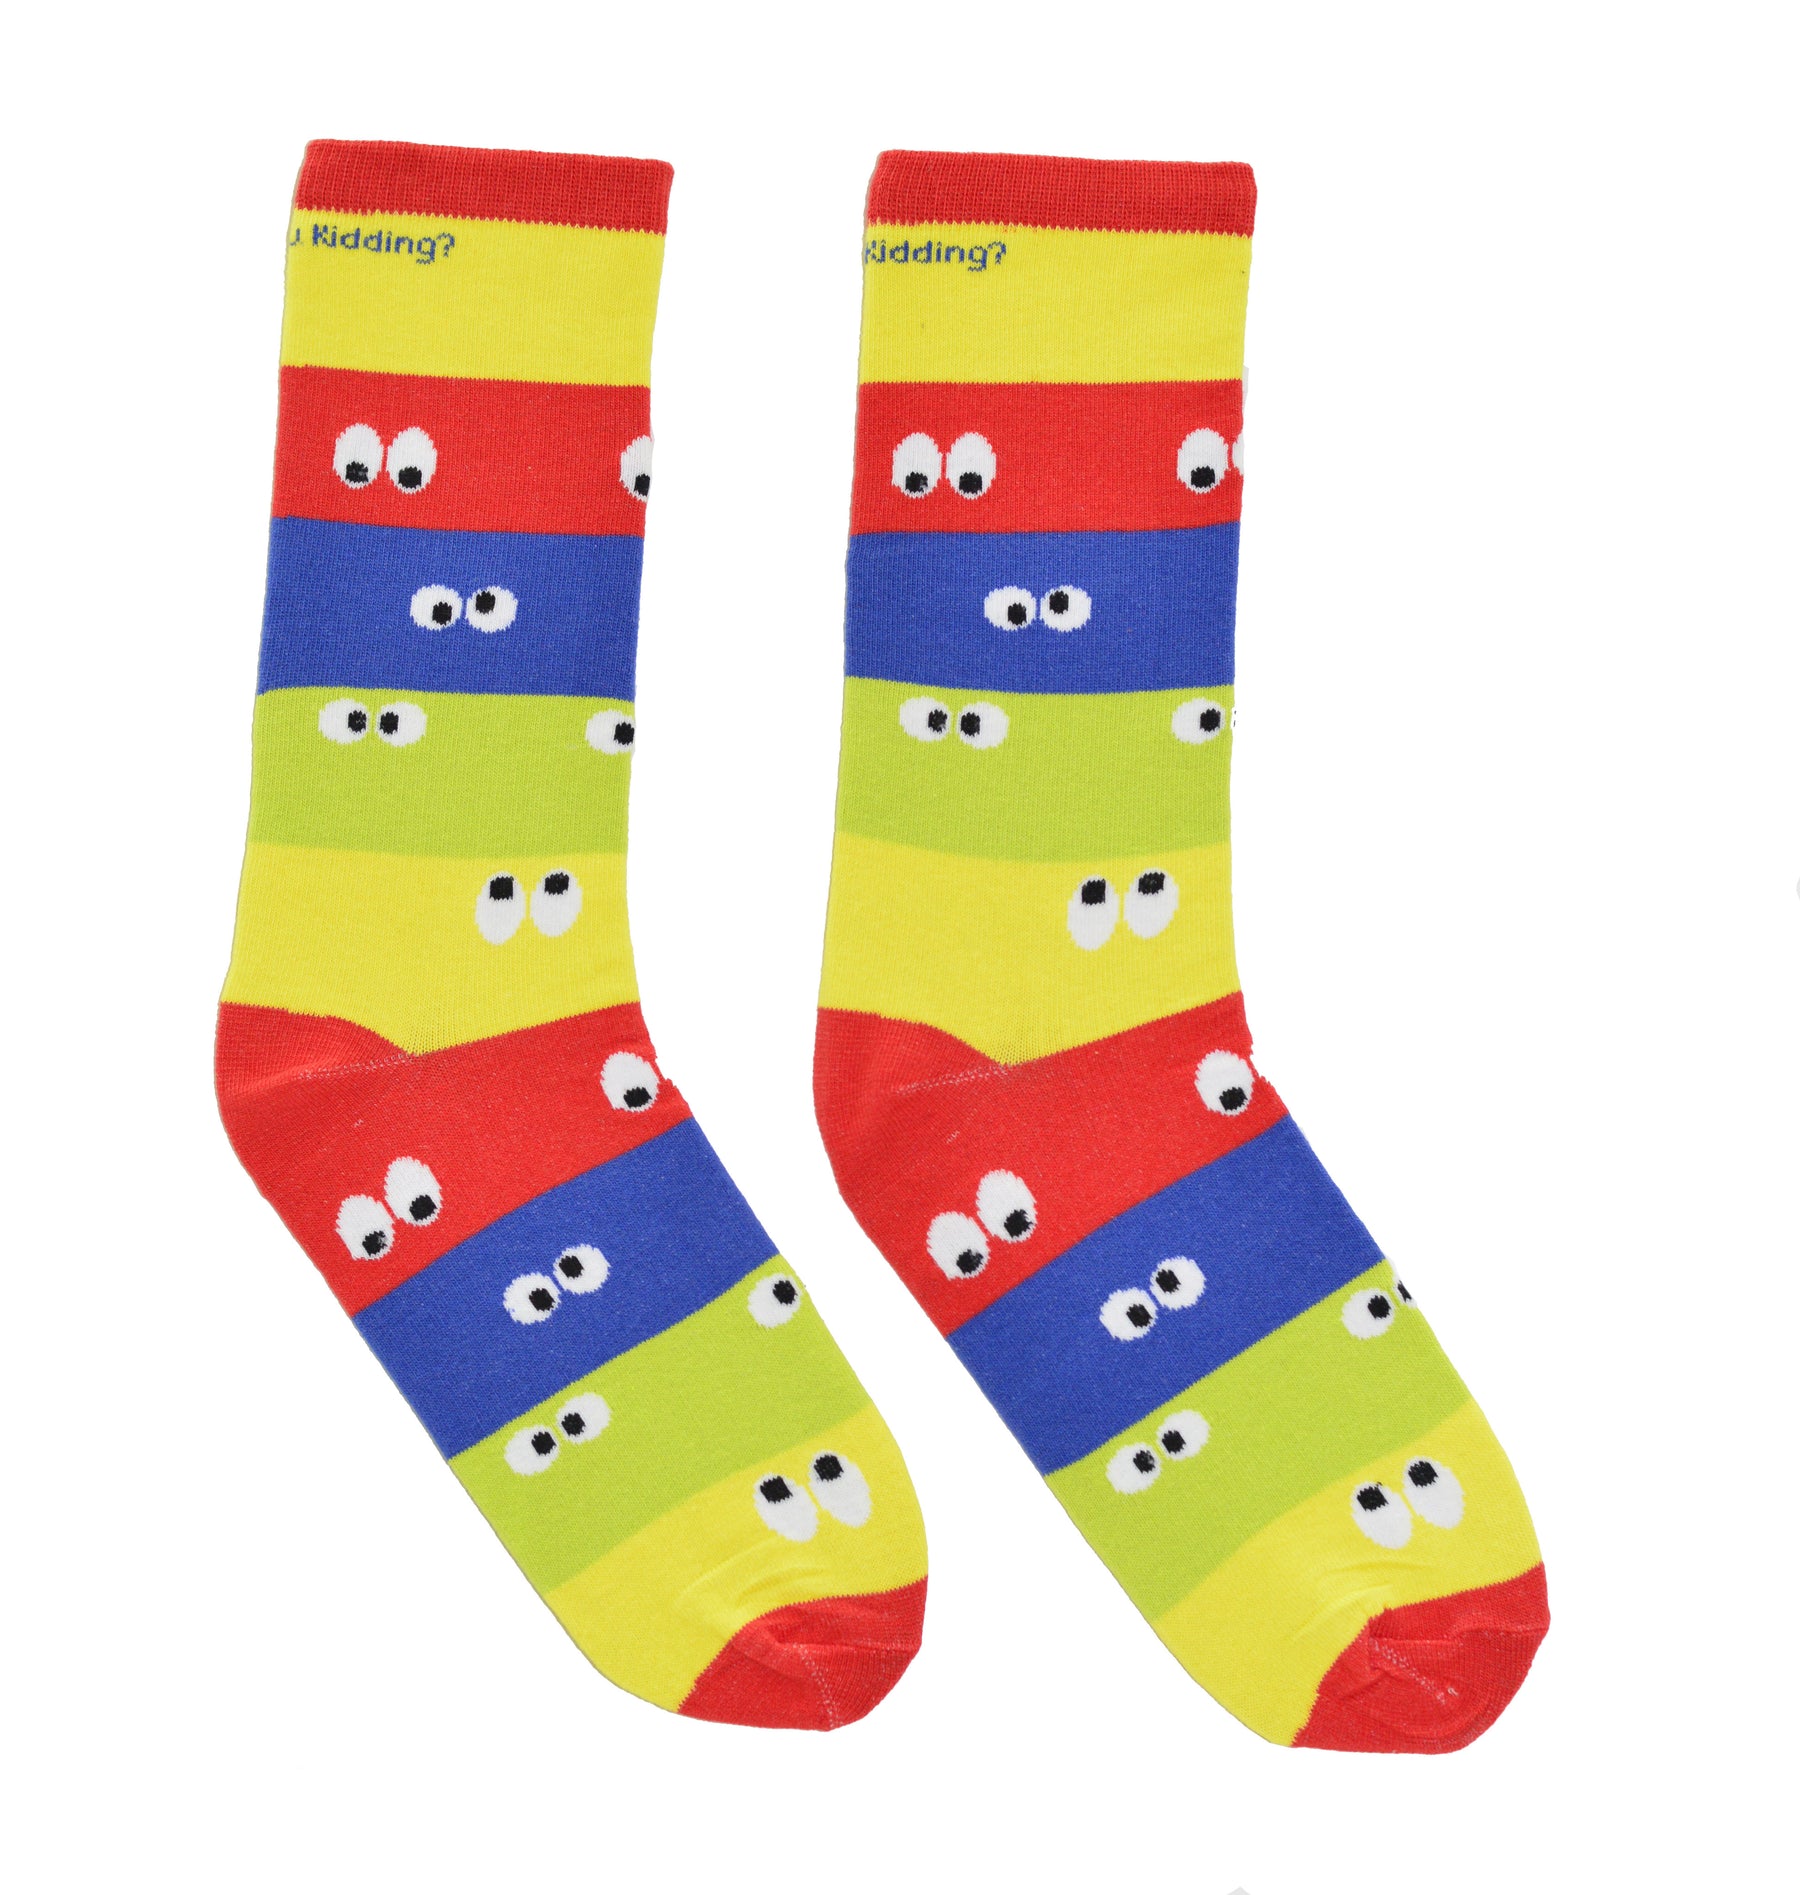 Googly Eyes Socks Red – Are You Kidding Socks